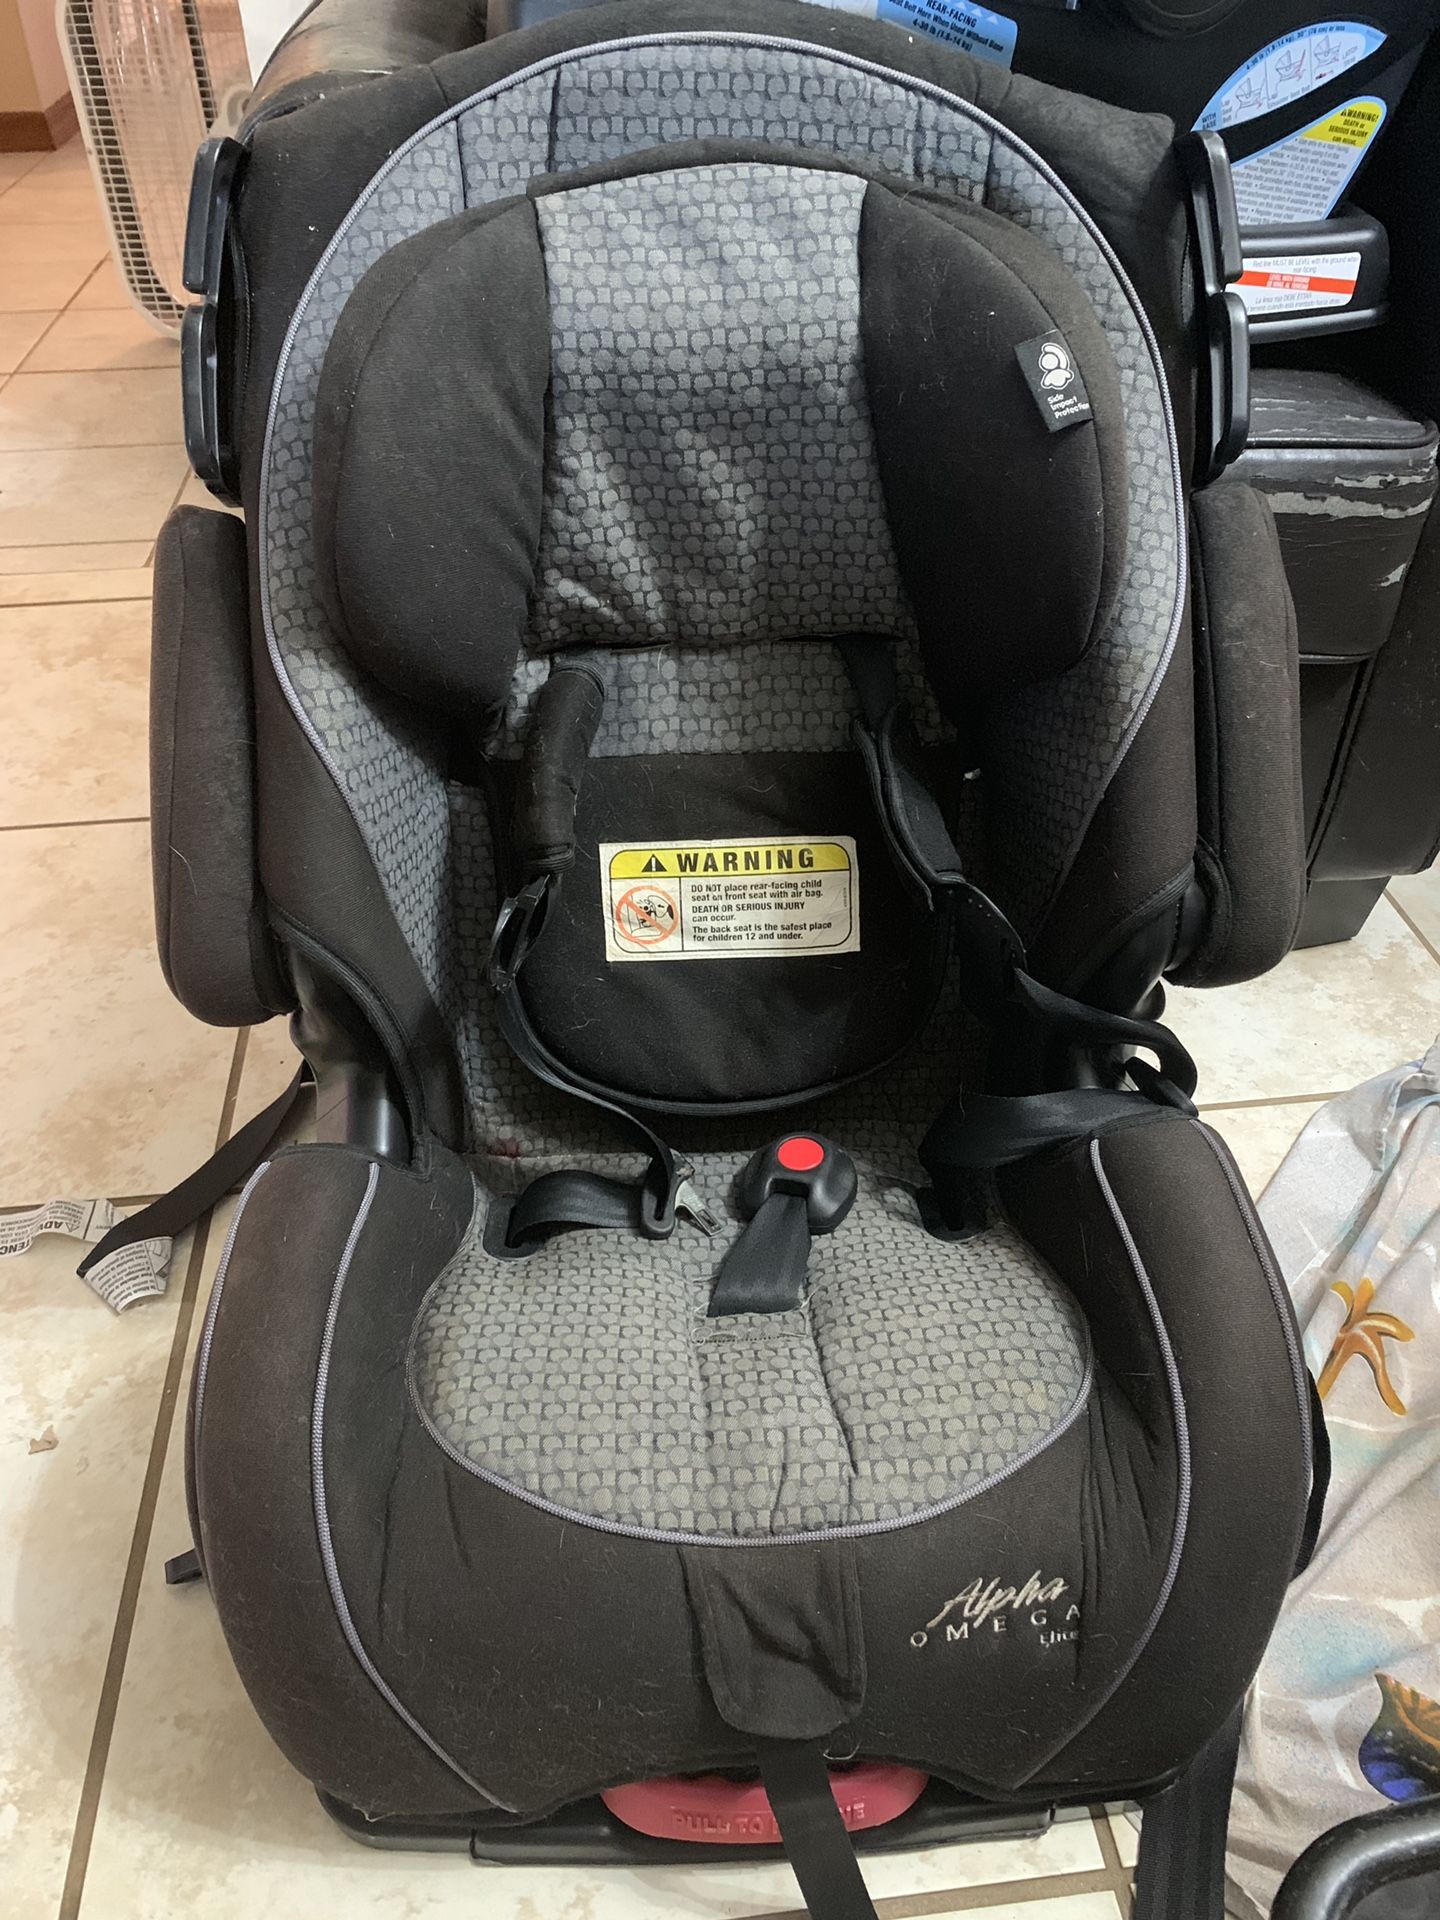 Forward facing toddler car seat up to 40lbs